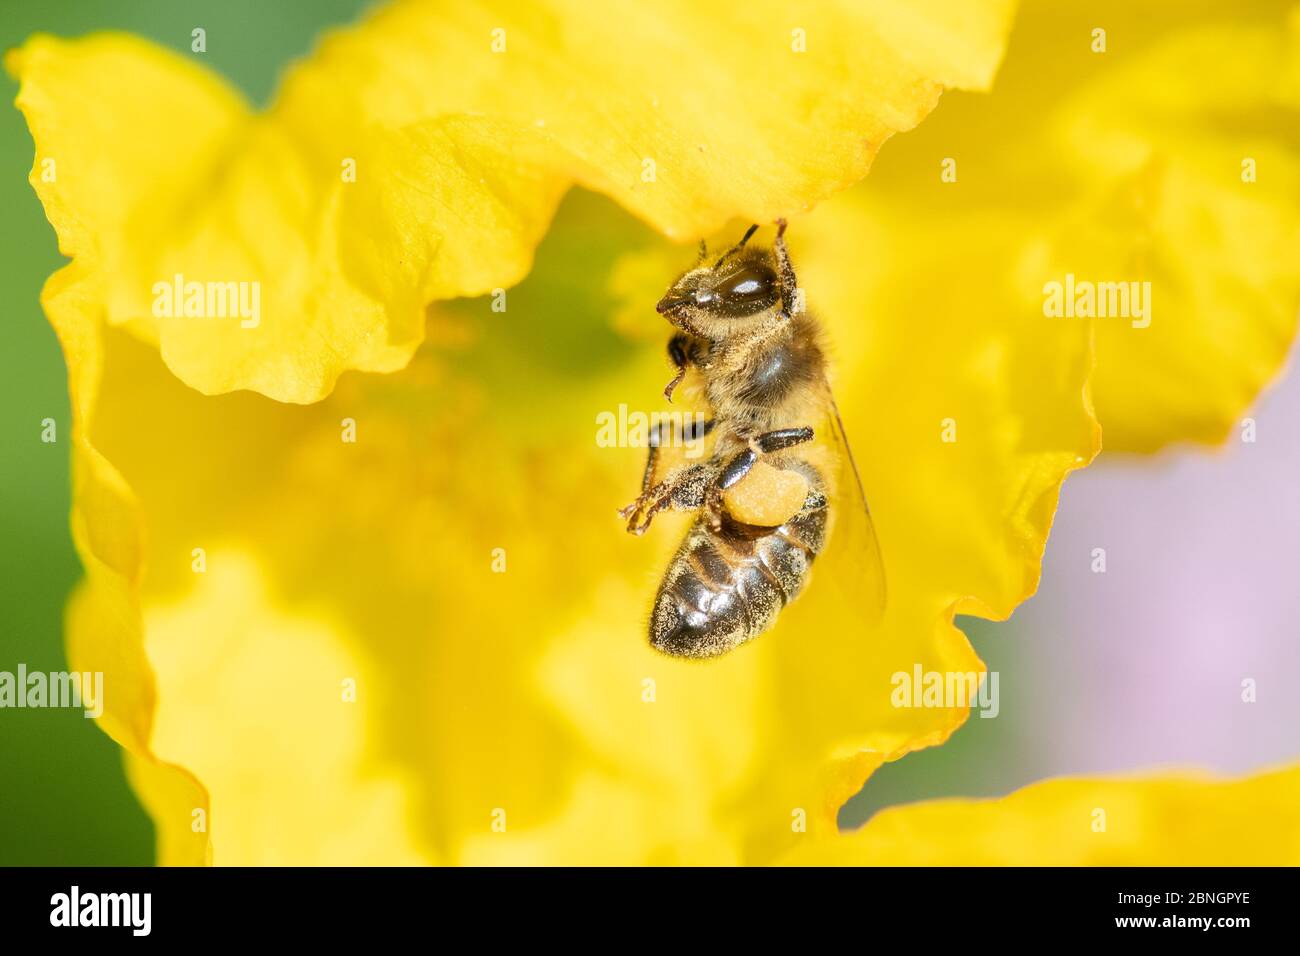 abeille - apis - accrochée de grains de pavot gallois peignant le pollen de son corps et dans les sacs de pollen - uk Banque D'Images